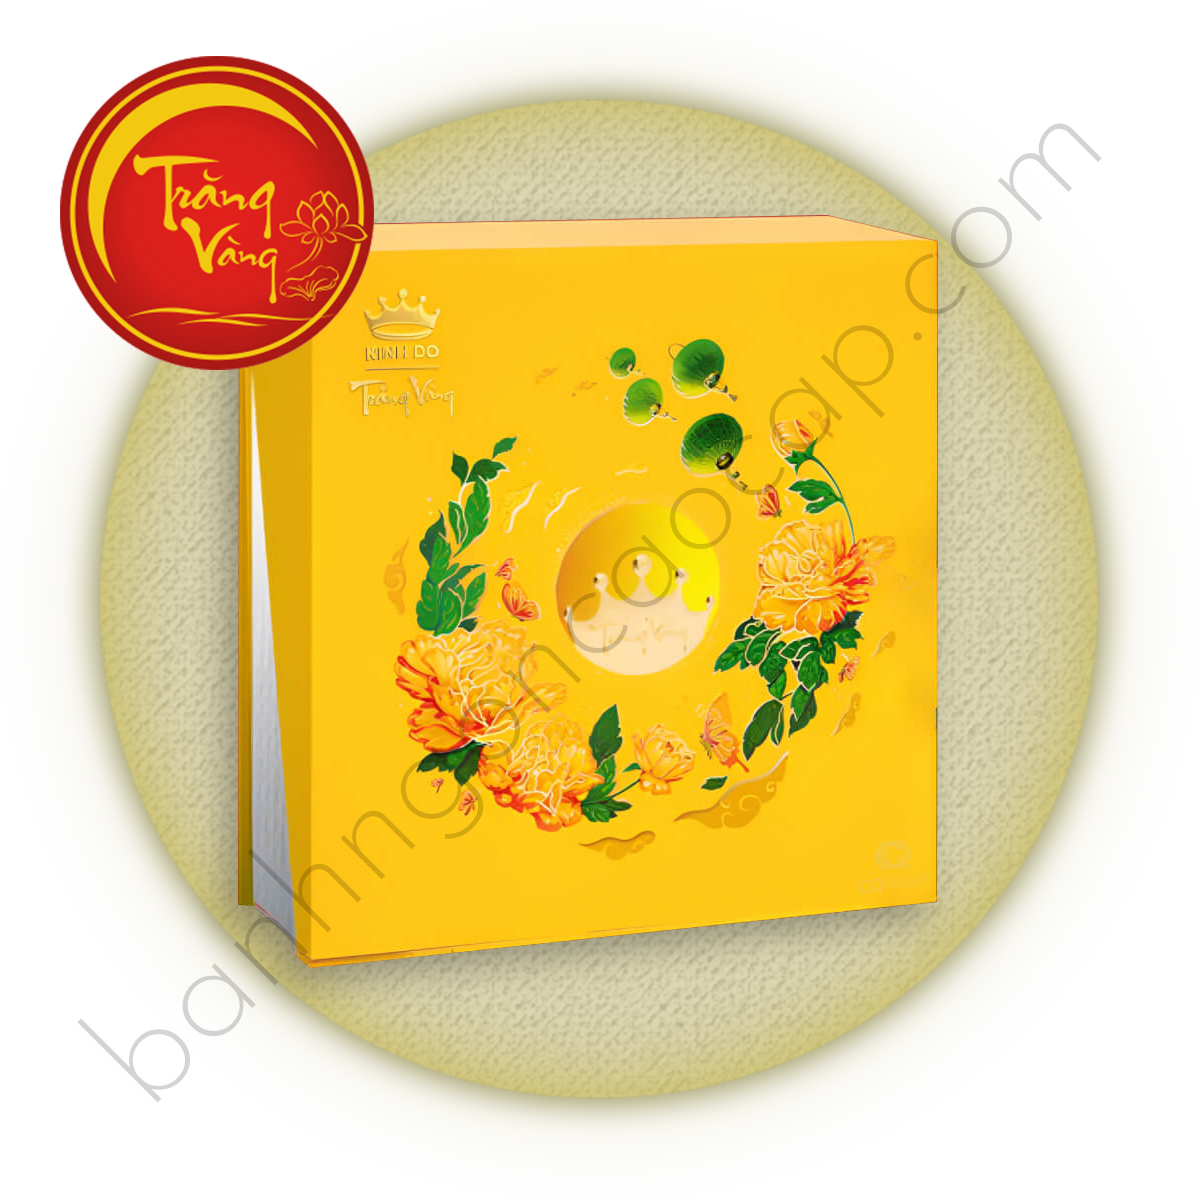 Trăng Vàng Hồng Ngọc An Nhiên ( Vàng ) - Bánh Trung Thu Kinh Đô